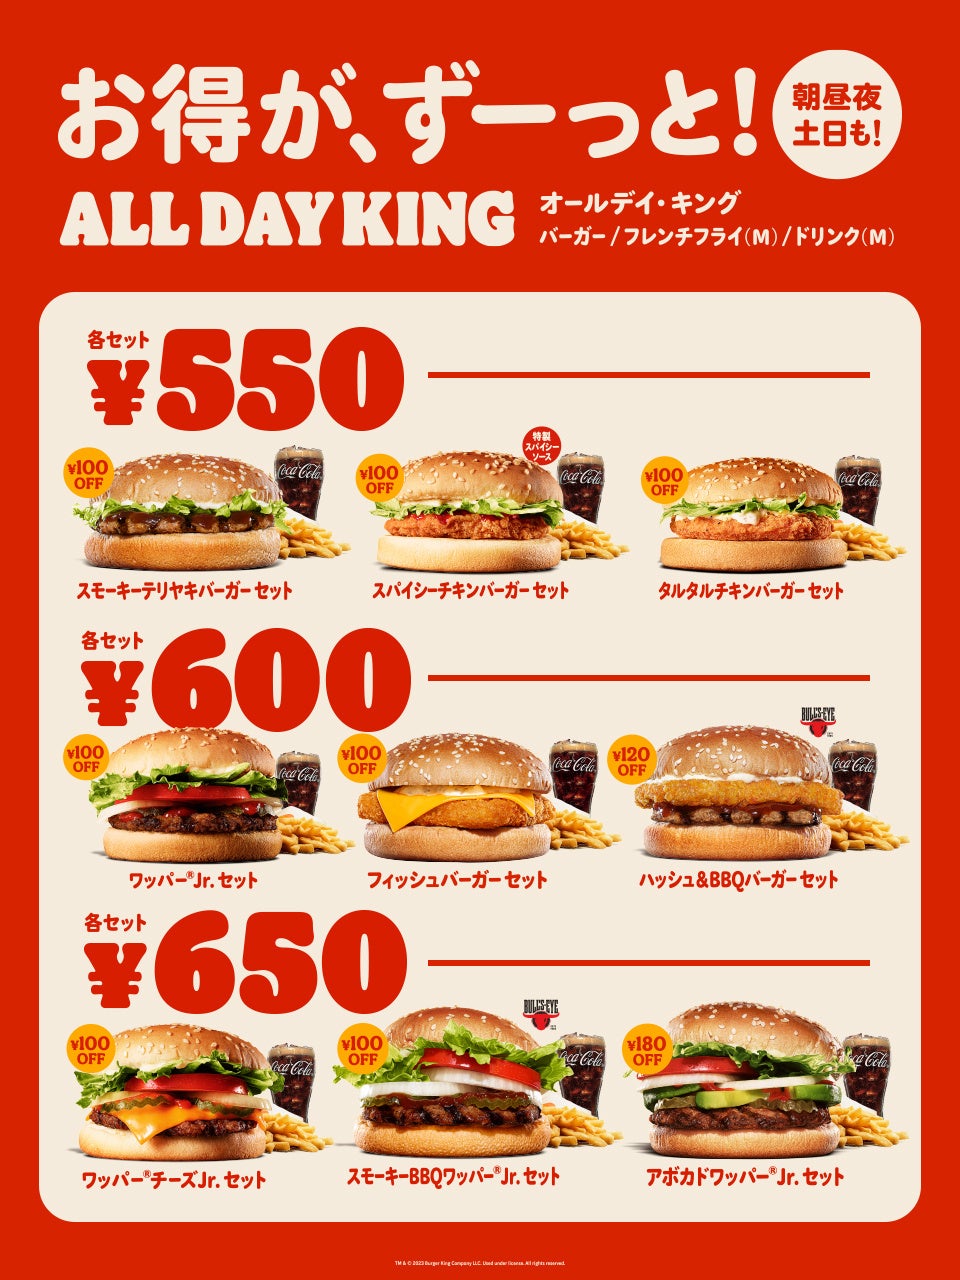 バーガーキング® が、時間や場所で値段が変わる日本のバーガー価格に苦悩する「バーガーデイトレーダー」を描いたムービーを公開！「オールデイ・キング」なら、全国一律、朝昼夜、平日も休日もずーっとお得！